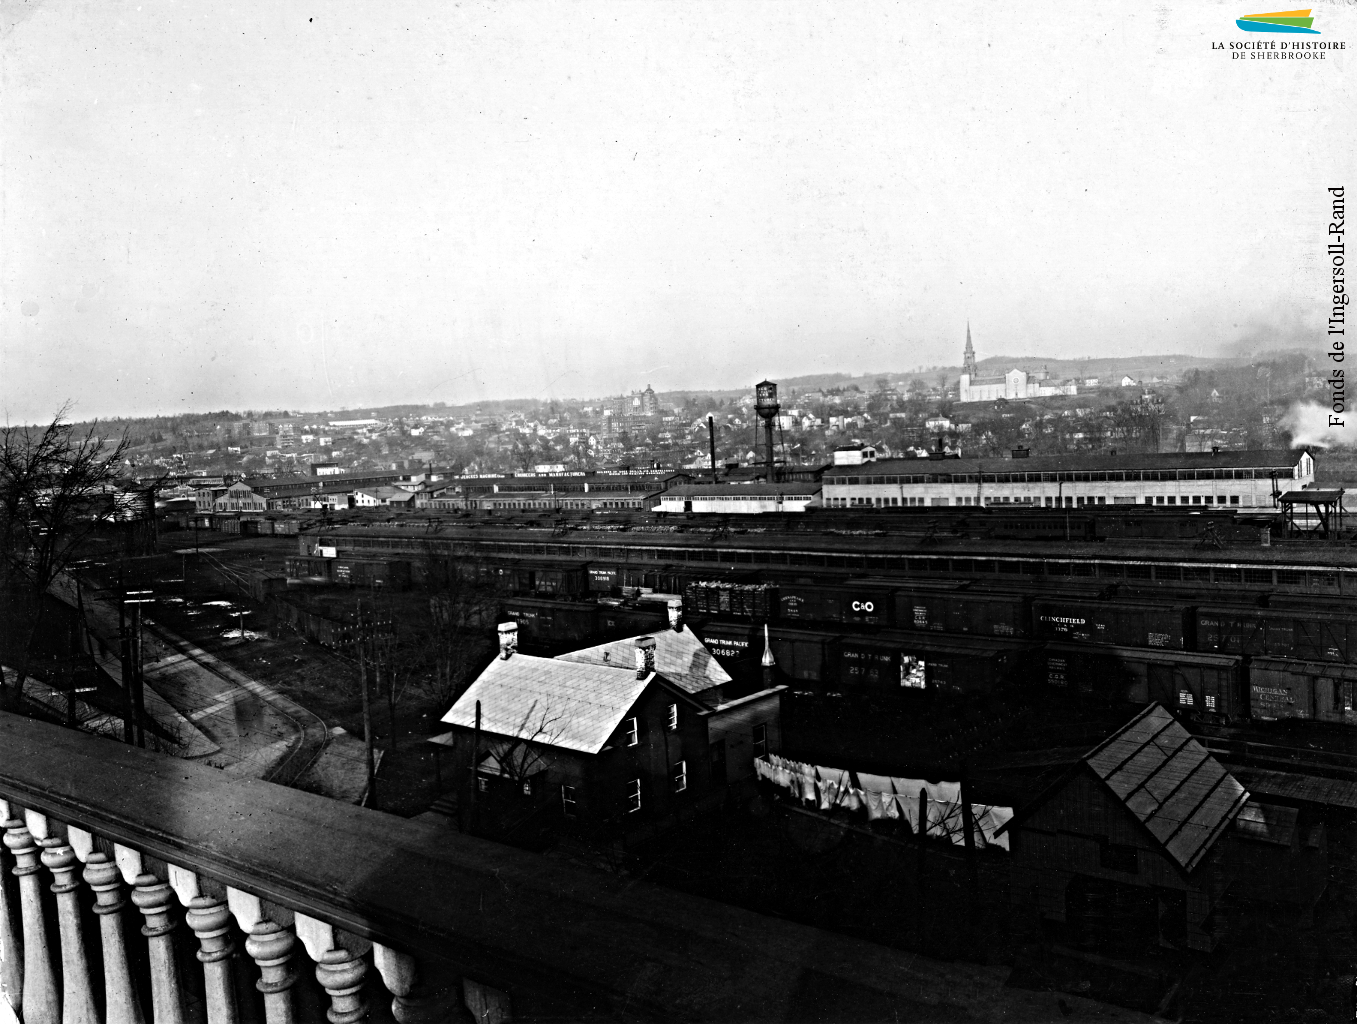 Le complexe industriel construit par la Jenckes Machine Company vu depuis un bâtiment situé sur la rue Wellington Sud, en 1923. Ce secteur industriel, situé près du chemin de fer, est inauguré en 1896 par la construction de cette usine, dont la machinerie fonctionne à l’électricité.